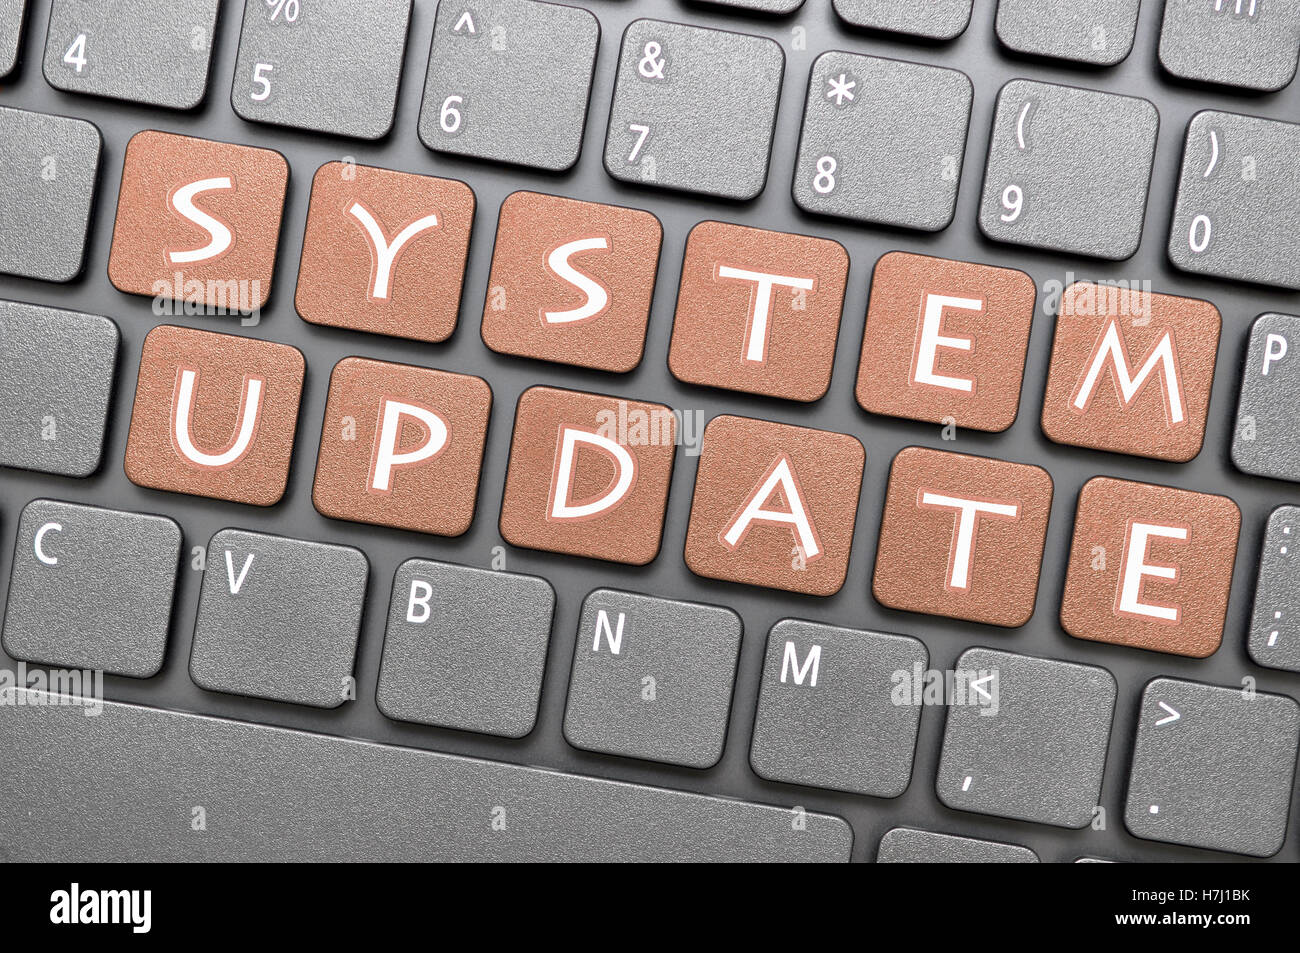 Braun System-Update-Key auf Tastatur Stockfoto